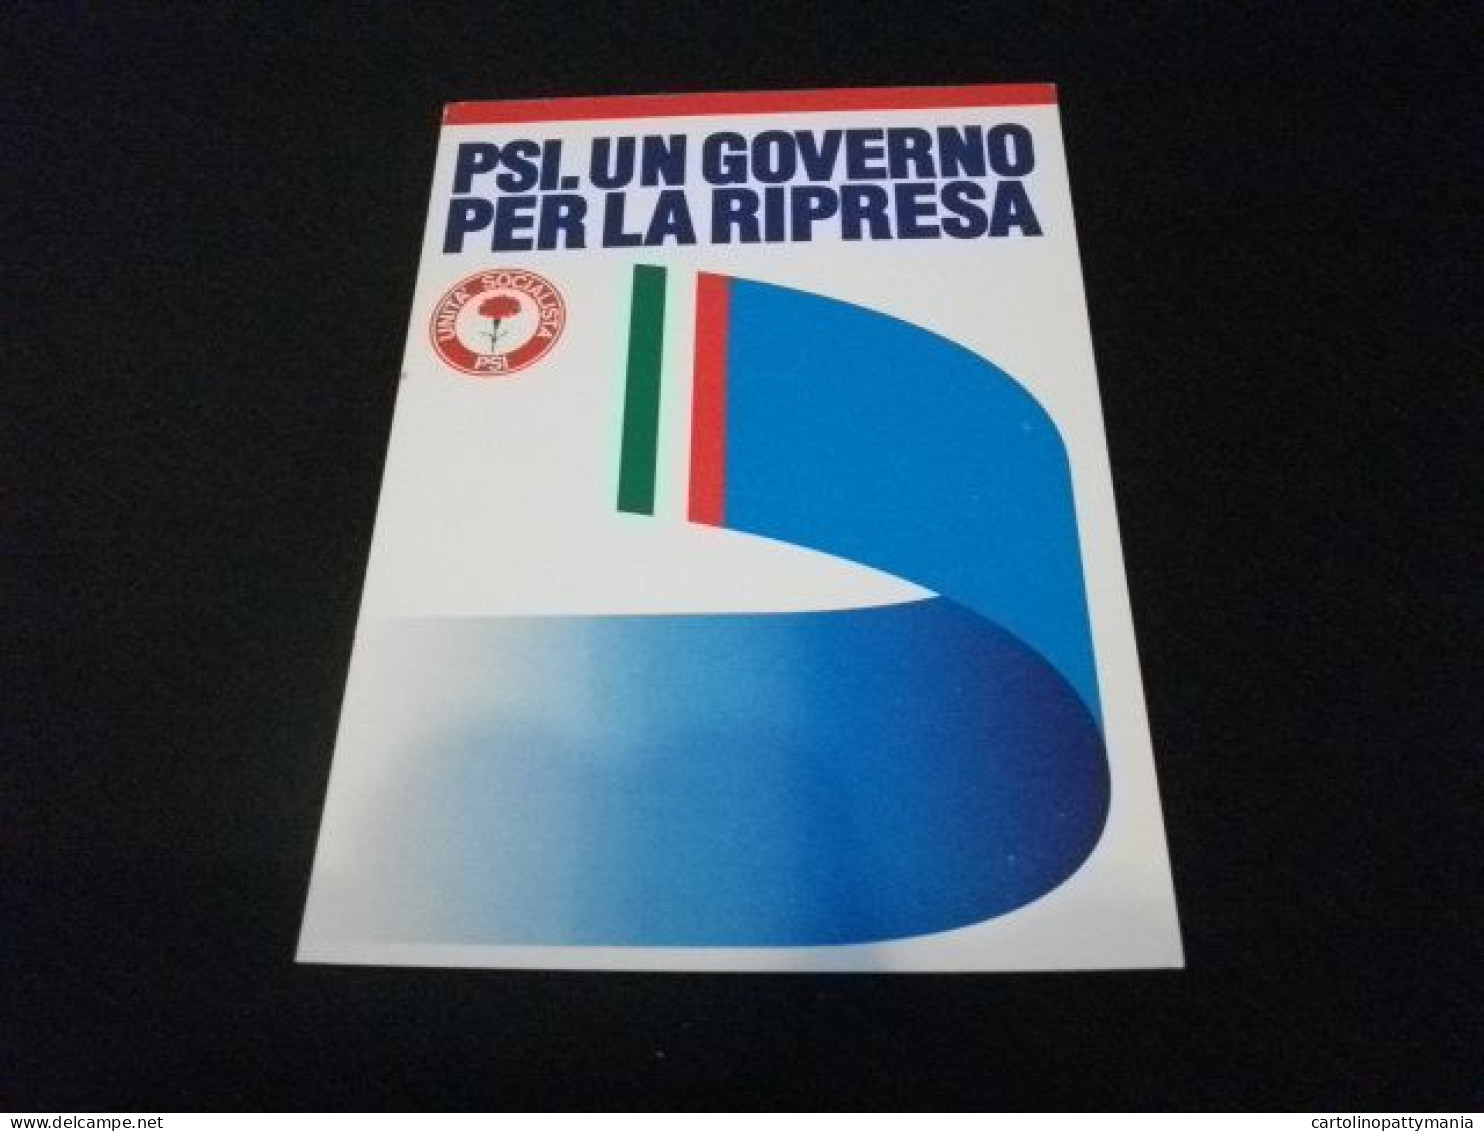 PSI UN GOVERNO PER LA RIPRESA UNITA' SOCIALISTA PARTITO SOCIALISTA ITALIANO - Partiti Politici & Elezioni